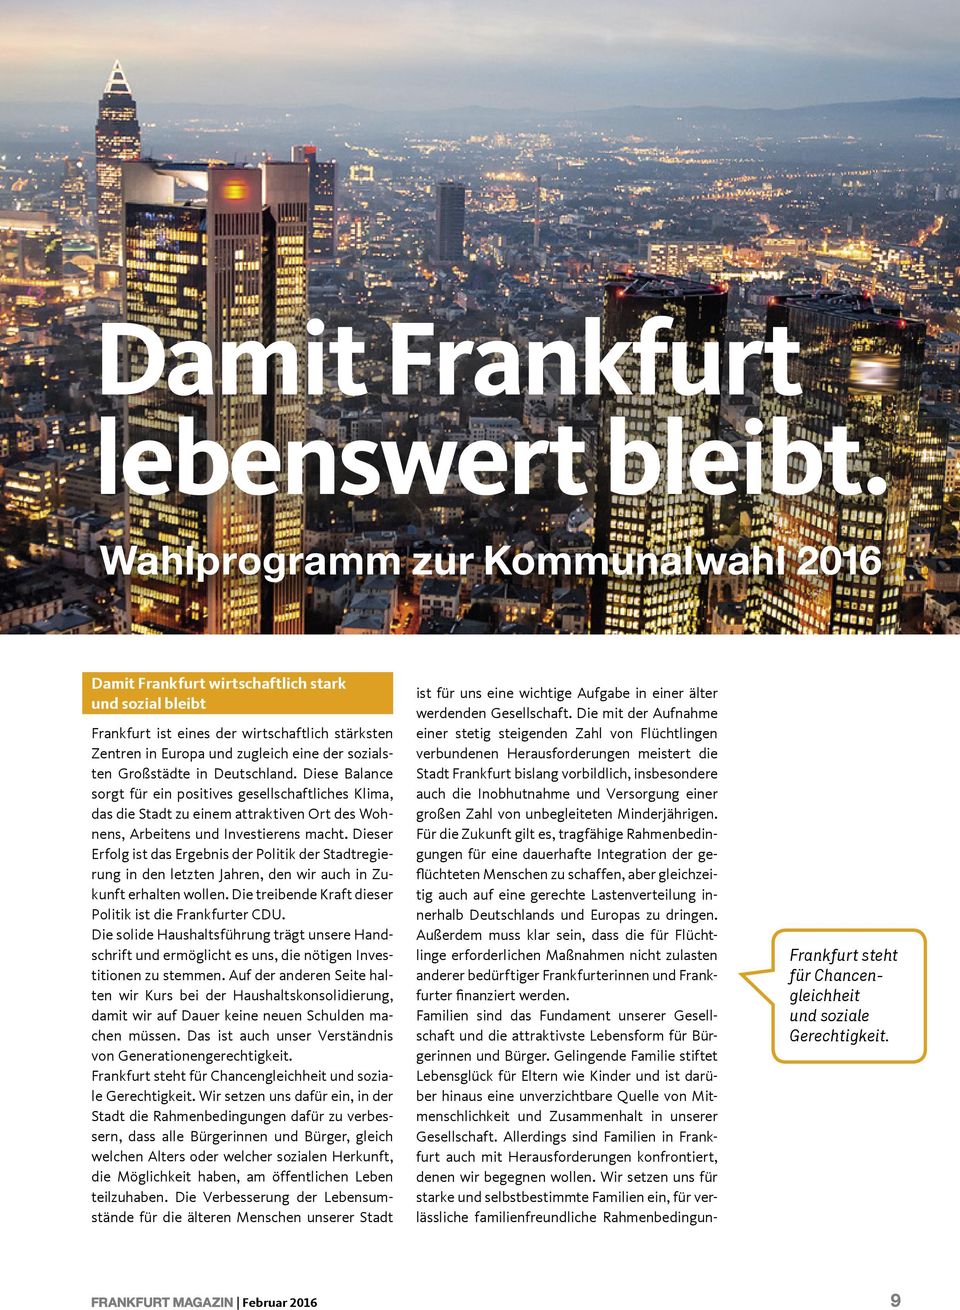 Großstädte in Deutschland. Diese Balance sorgt für ein positives gesellschaftliches Klima, das die Stadt zu einem attraktiven Ort des Wohnens, Arbeitens und Investierens macht.